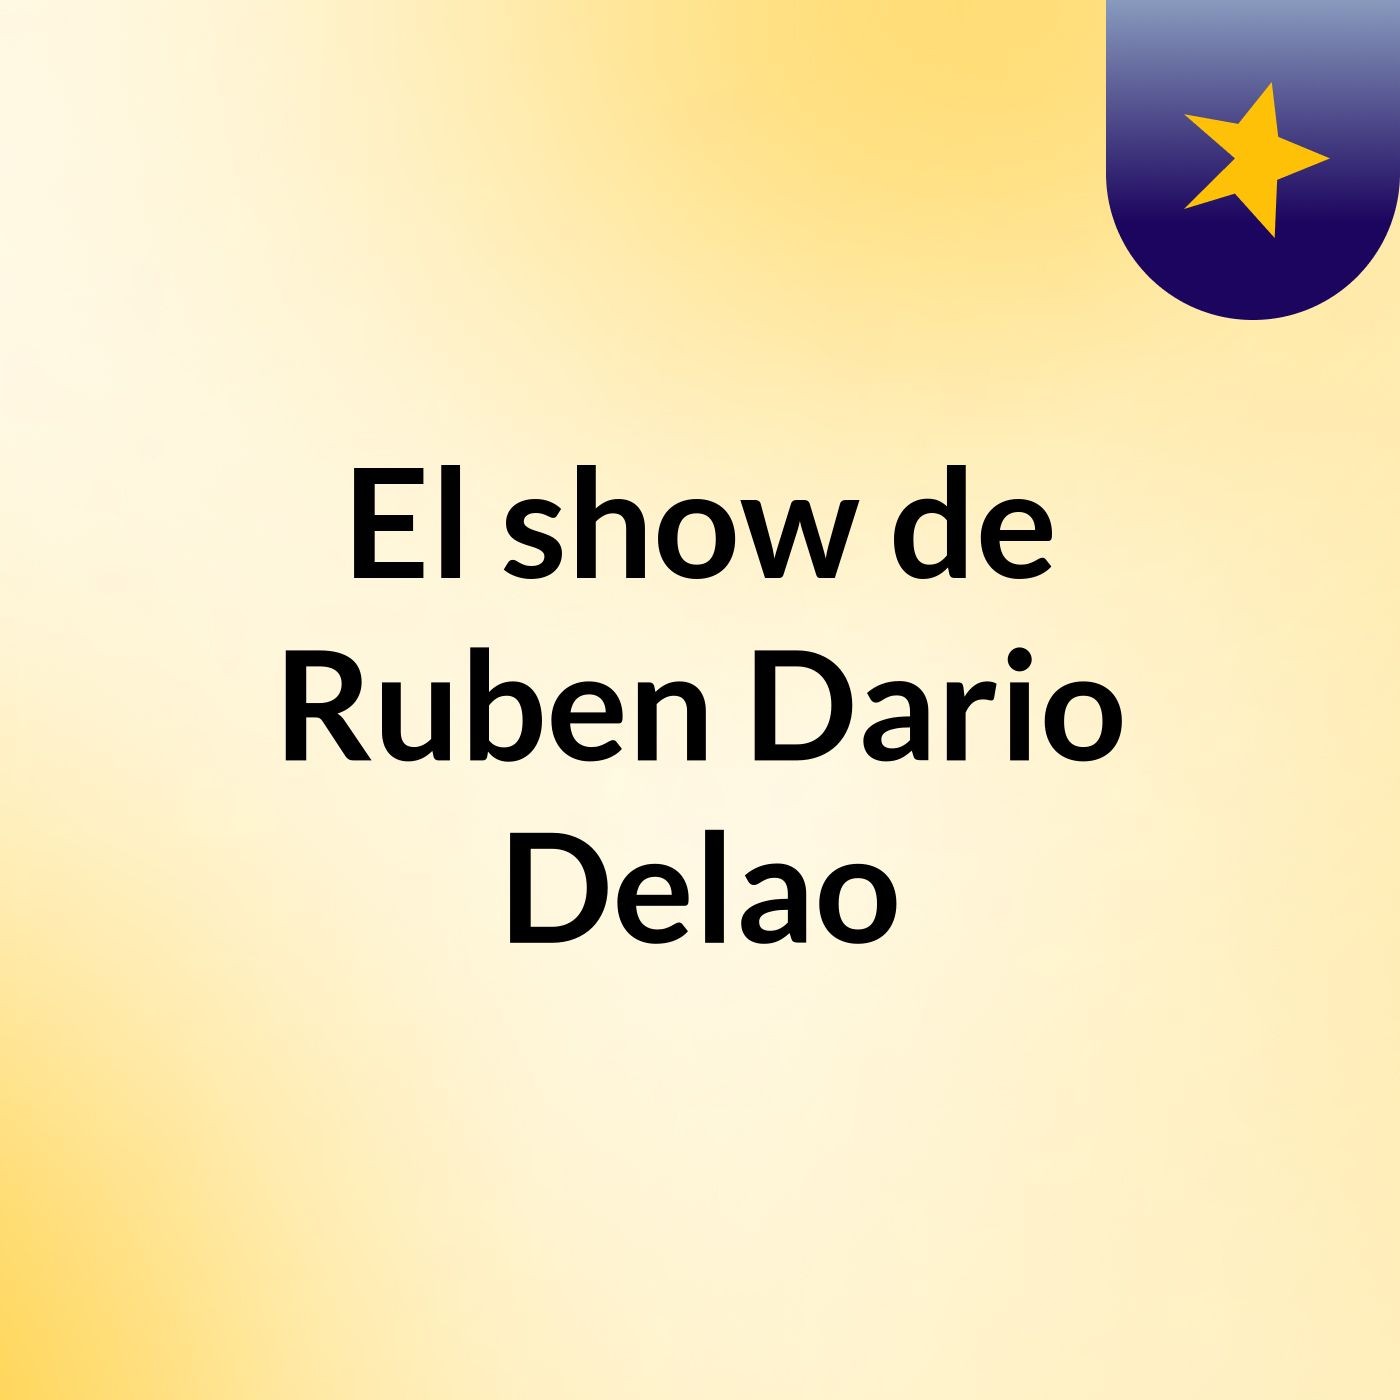 El show de Ruben Dario Delao